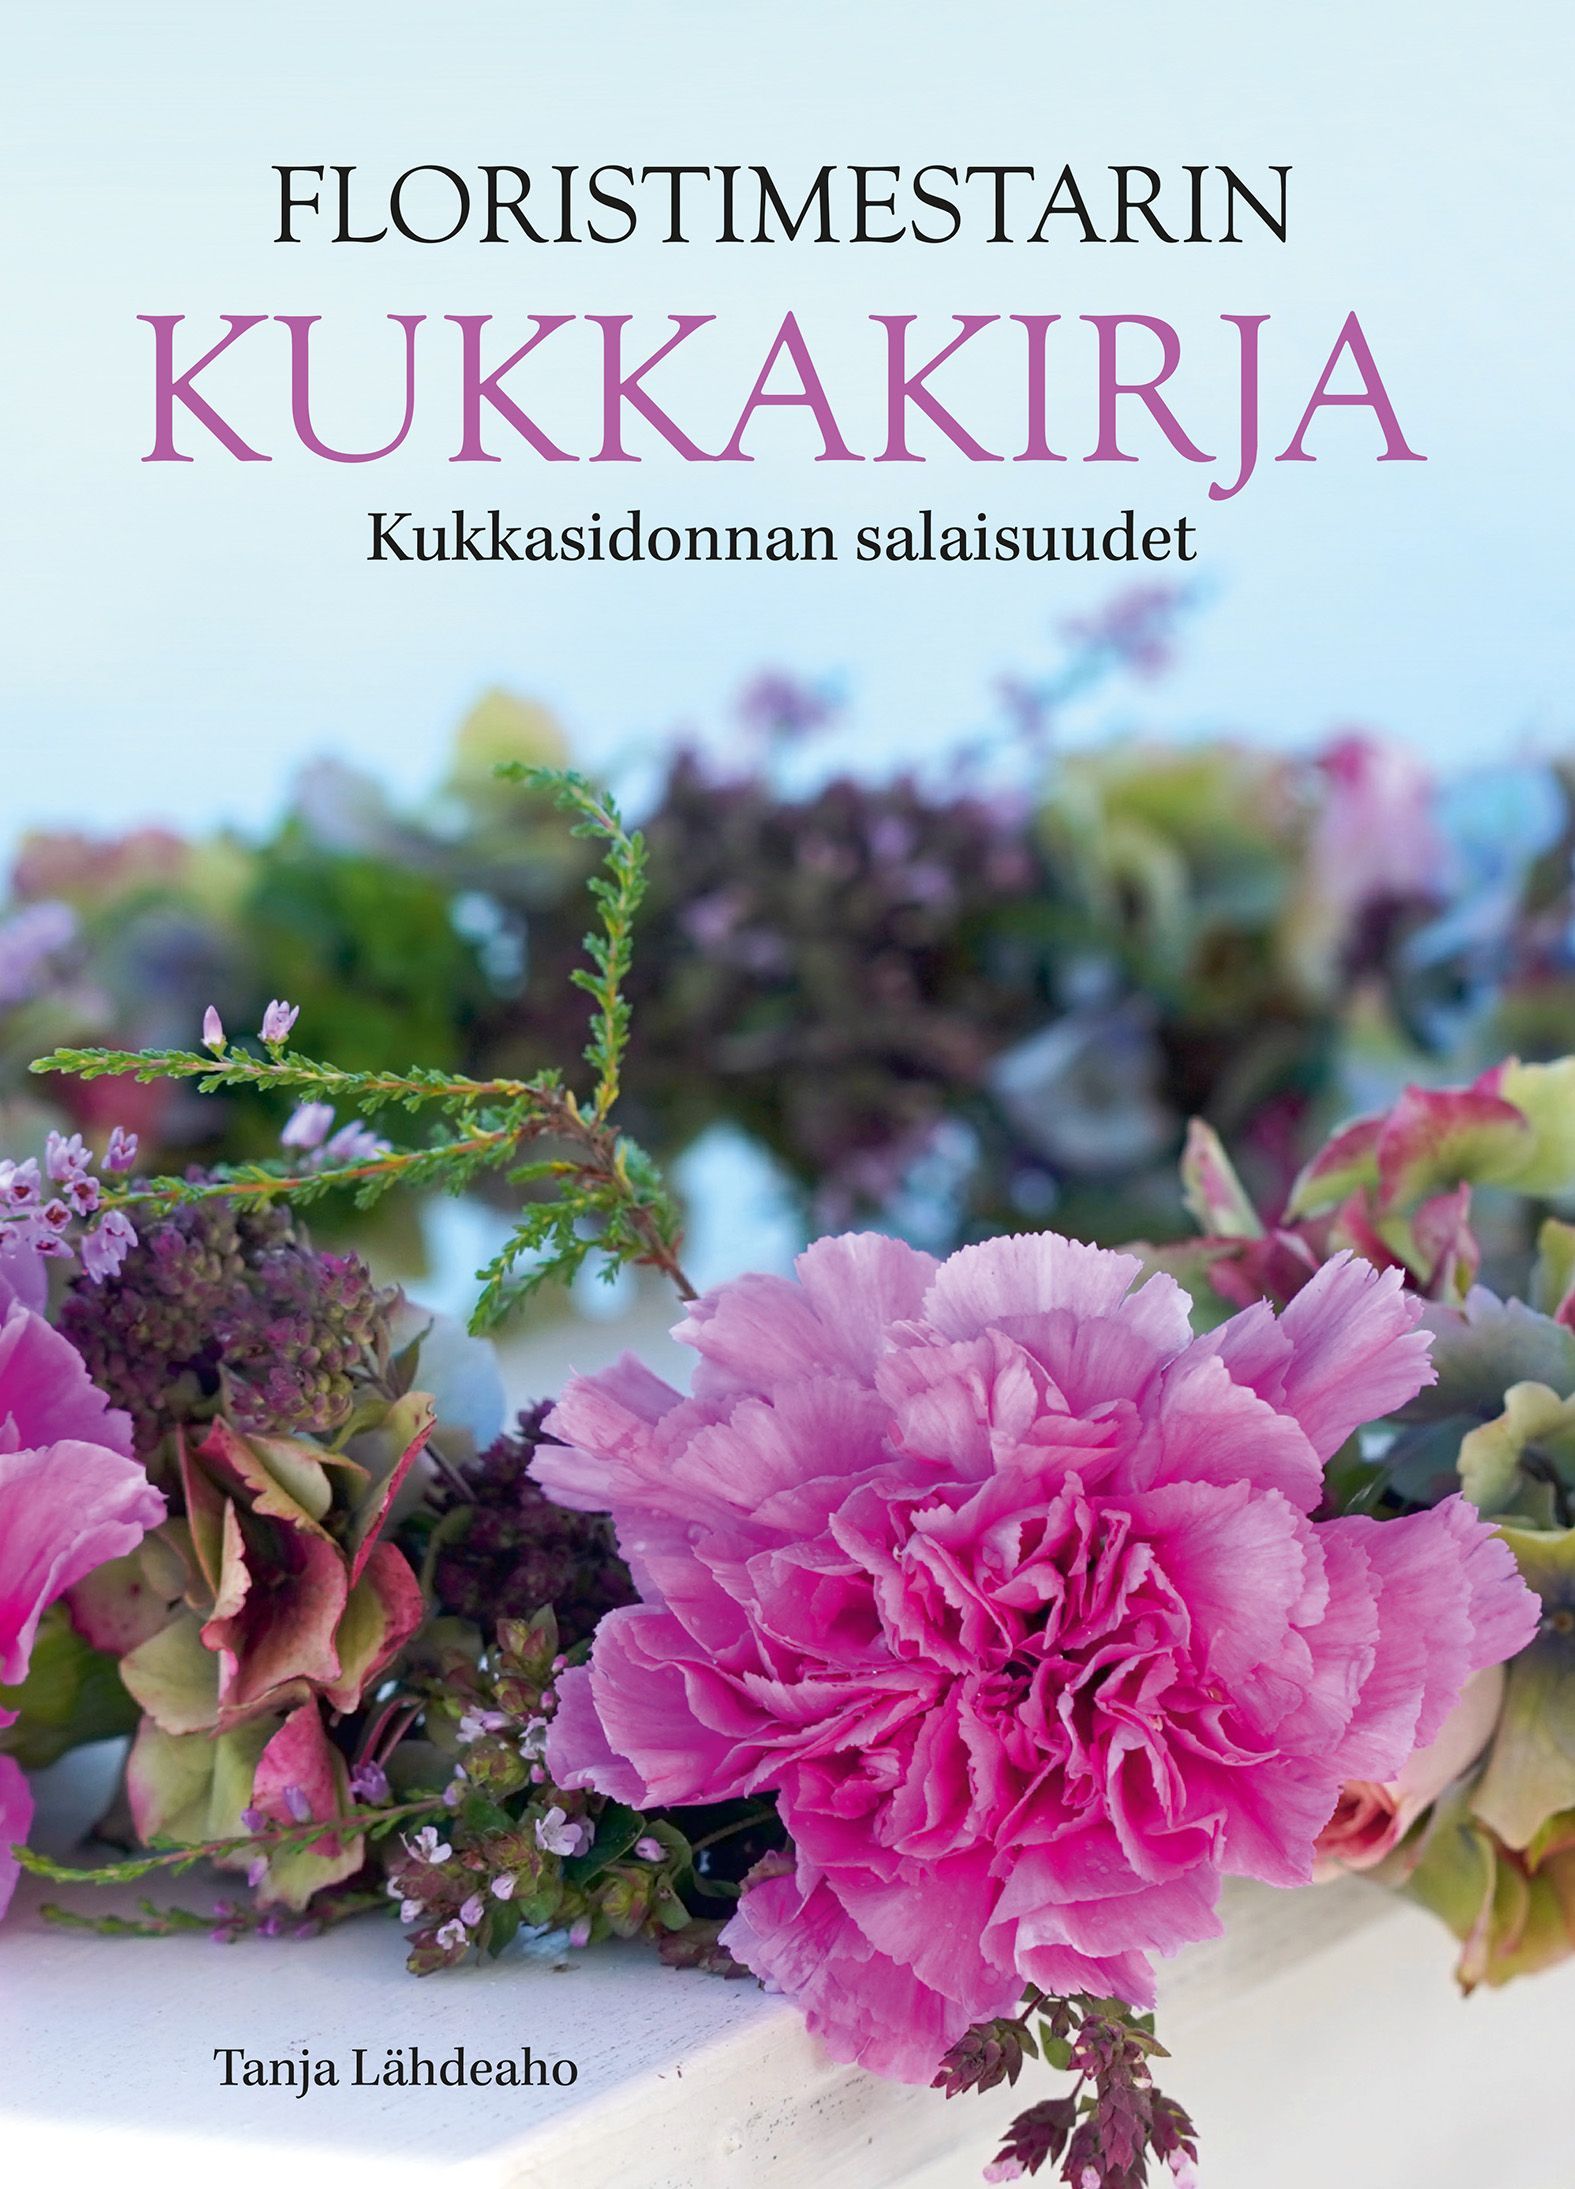 Tanja Lähdeaho : Floristimestarin Kukkakirja